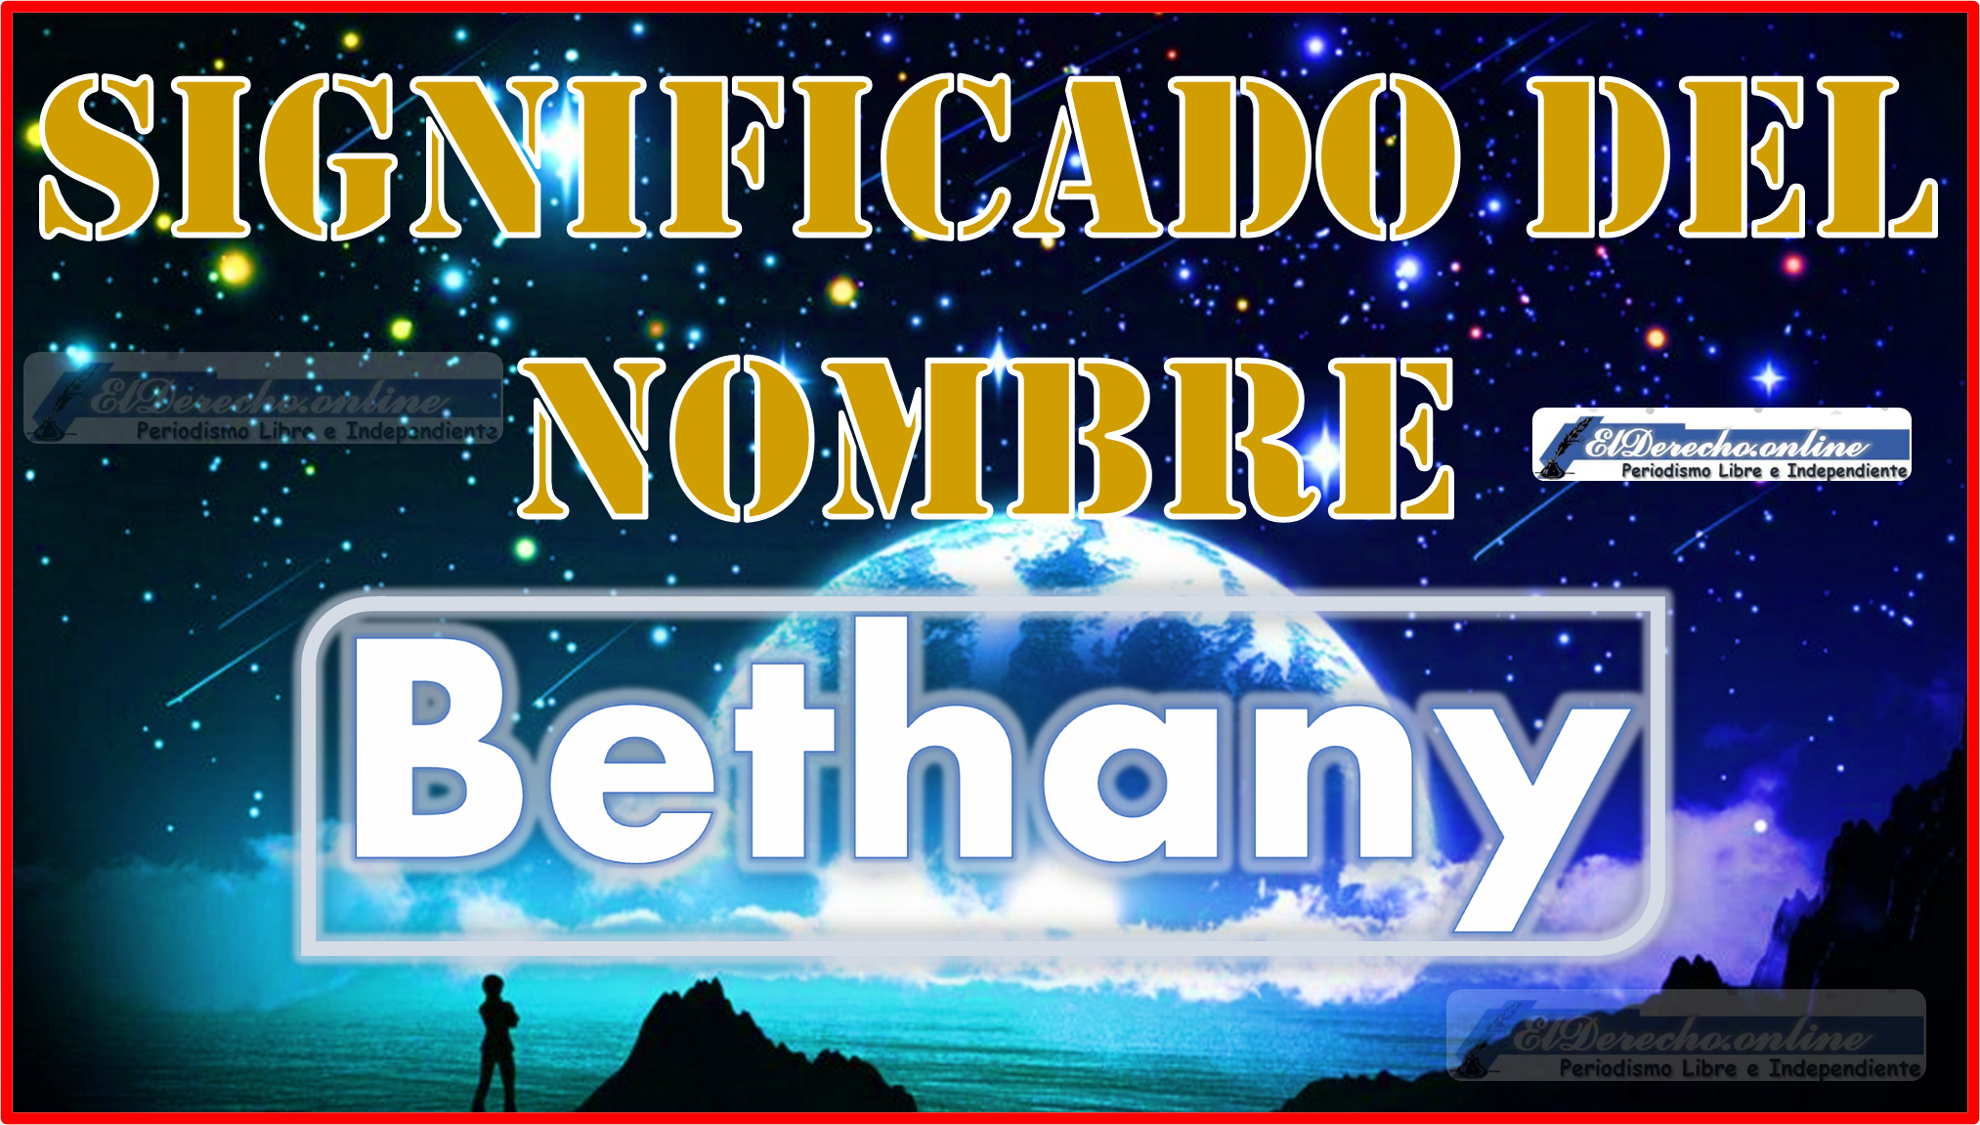 Significado del nombre Bethany, su origen y más